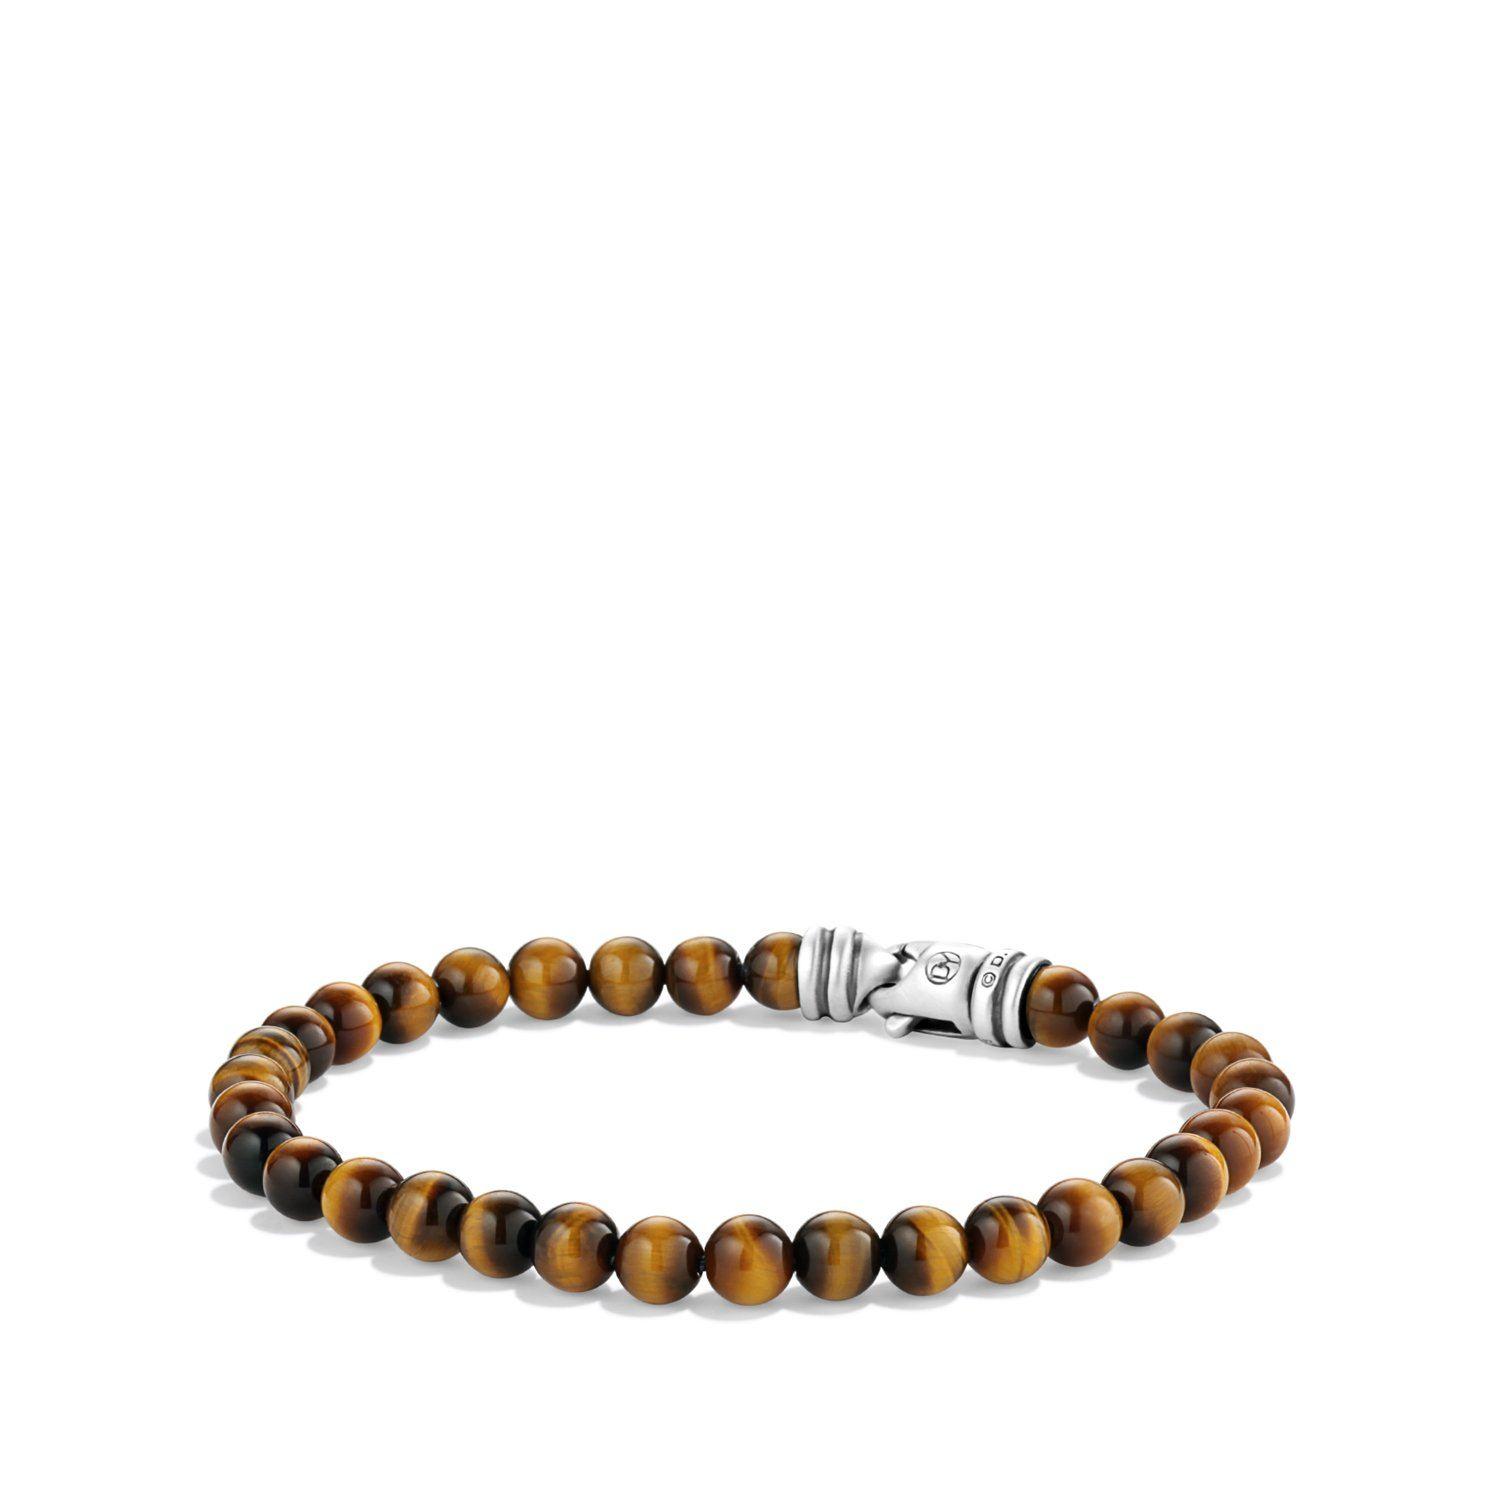 David Yurman Men's 6mm Spiritual Beads Bracelet with Tiger's Eye